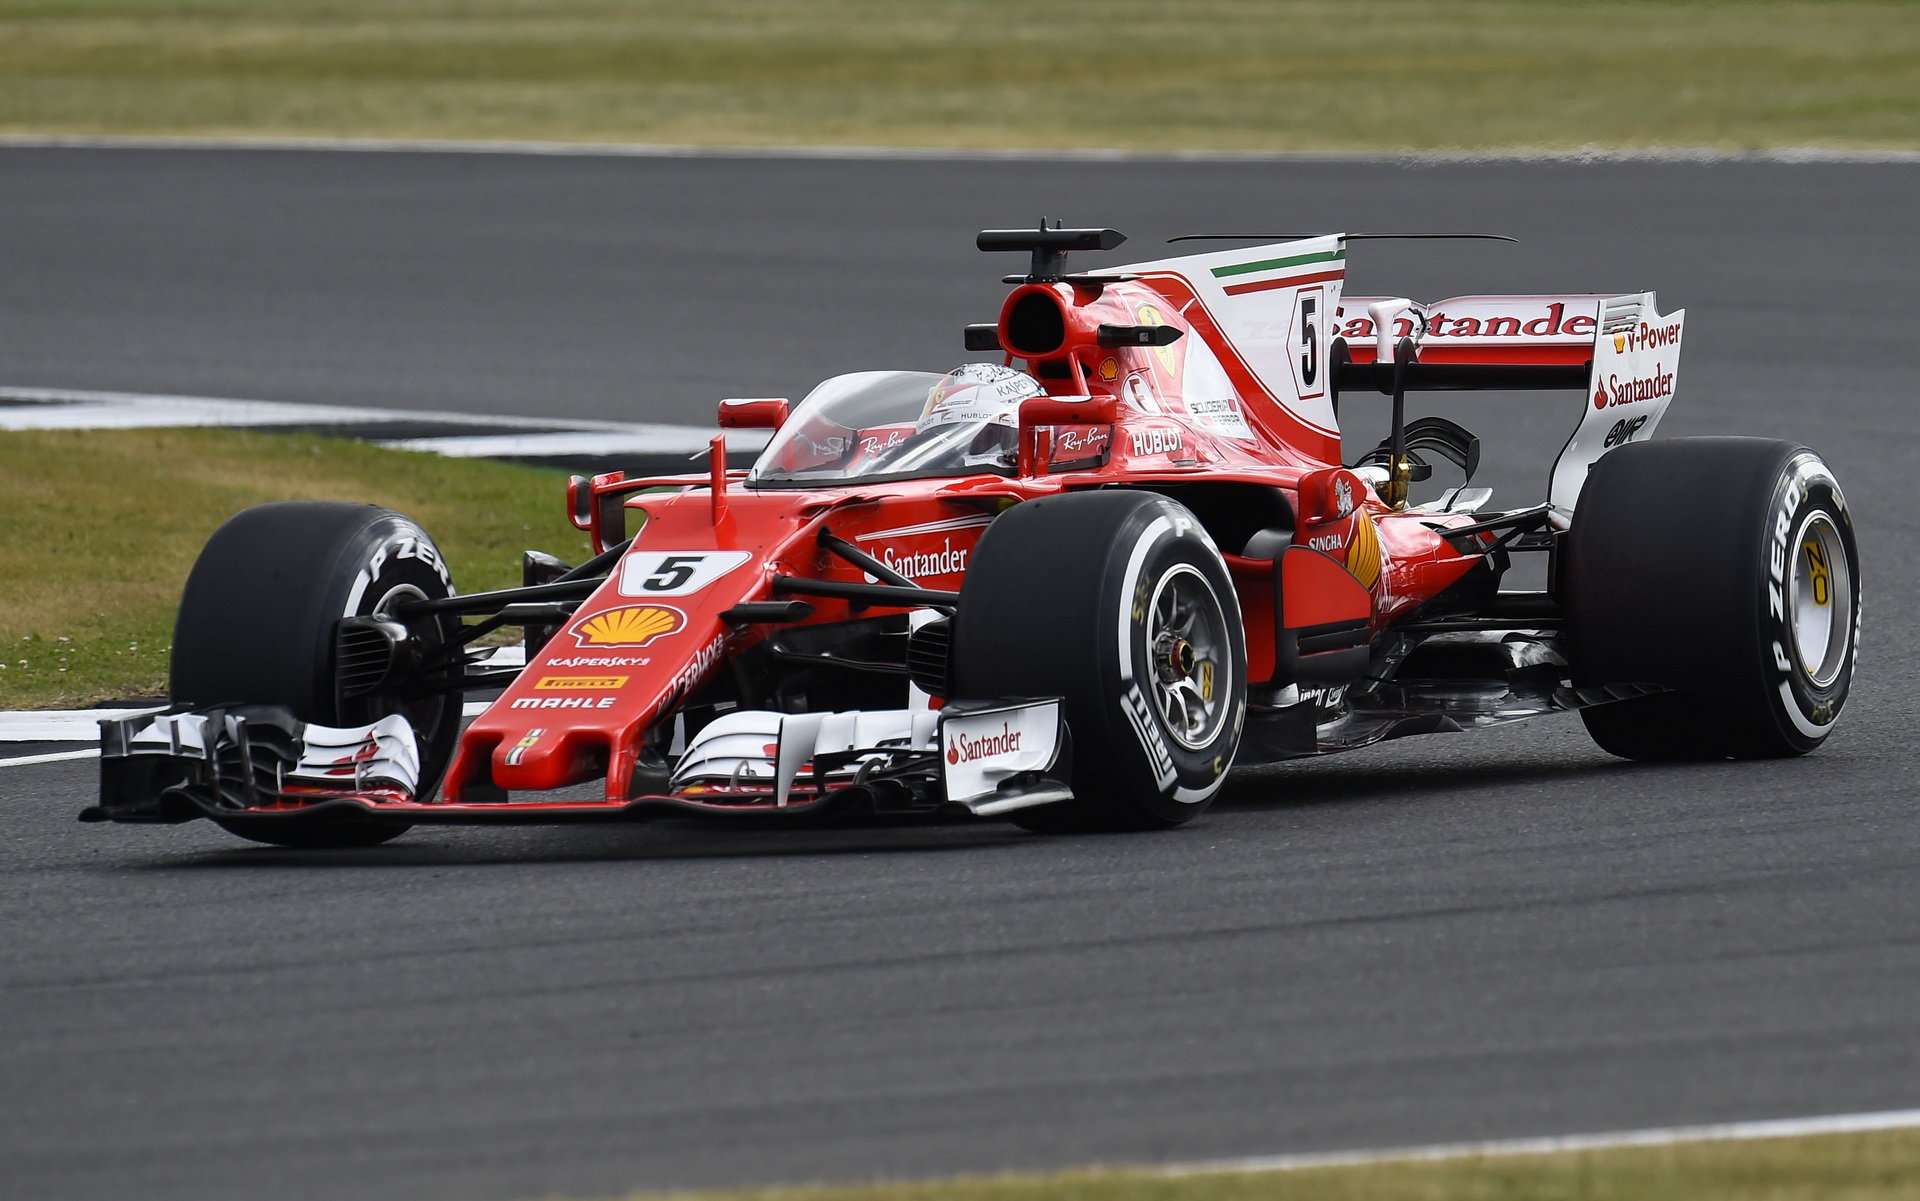 Sebastian Vettel při testu ochranného štítu v Silverstone